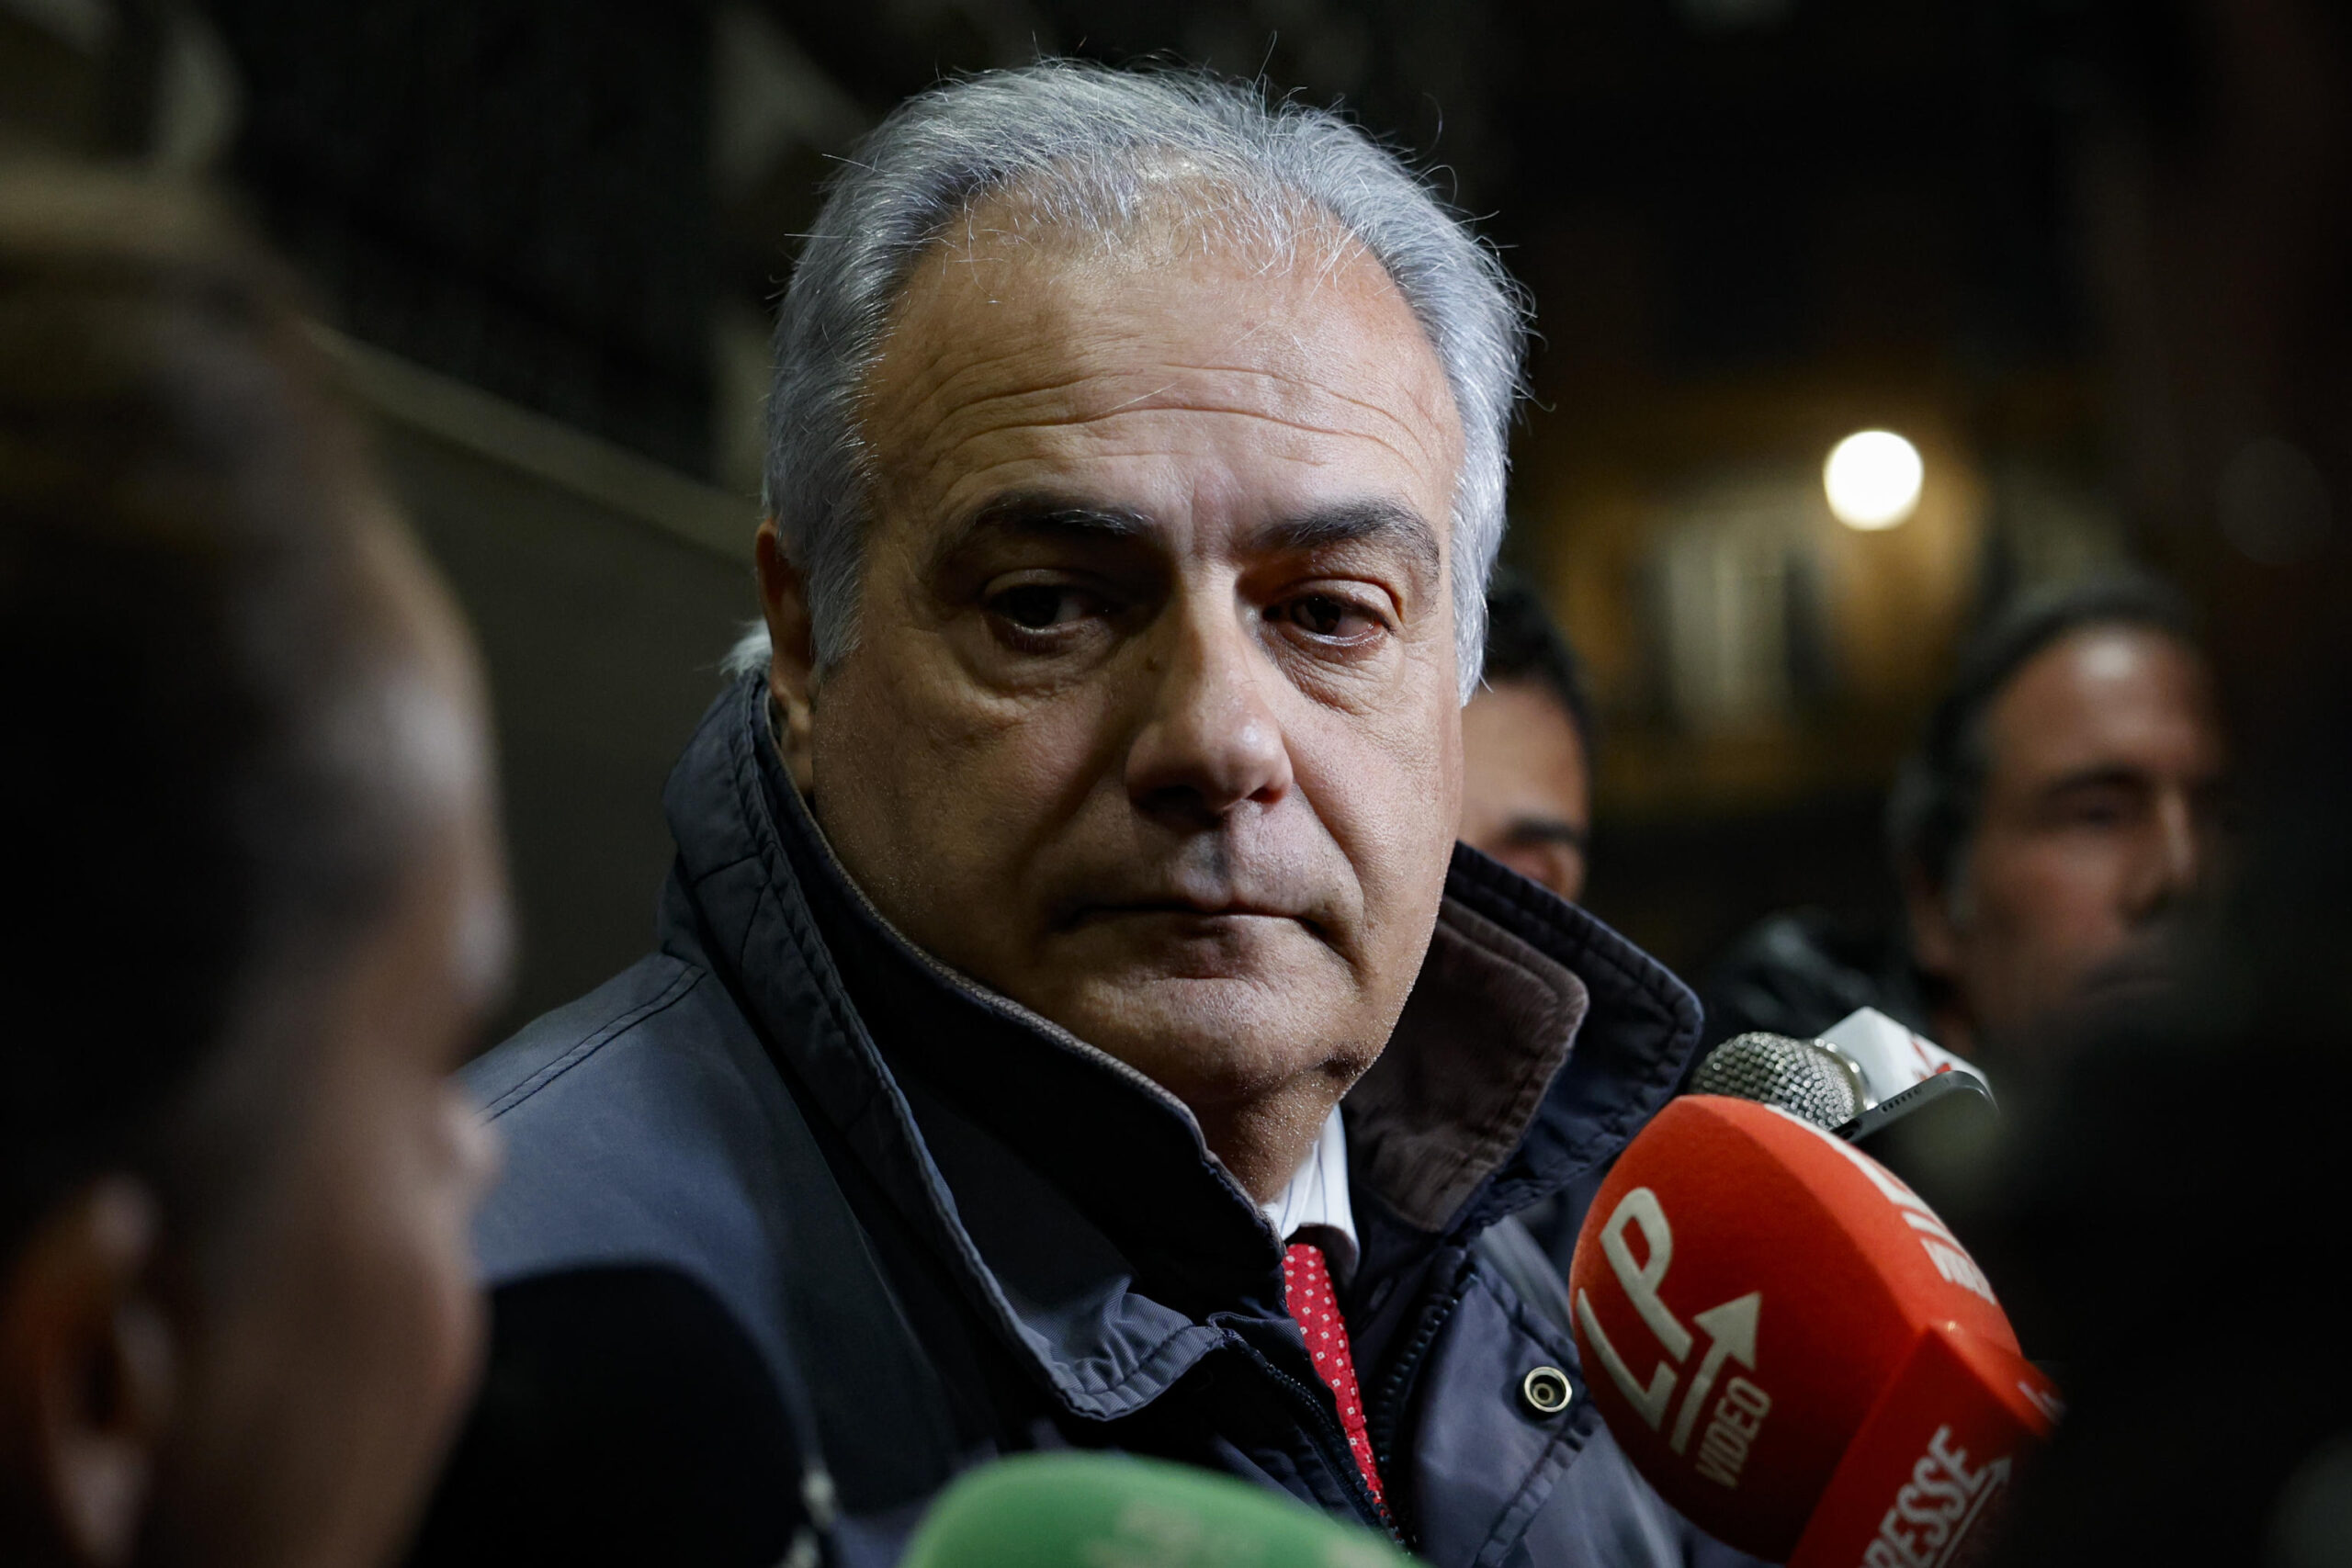 La denuncia di Roberto Salis: "Non vogliono far votare Ilaria, è una grave violazione dei diritti umani"